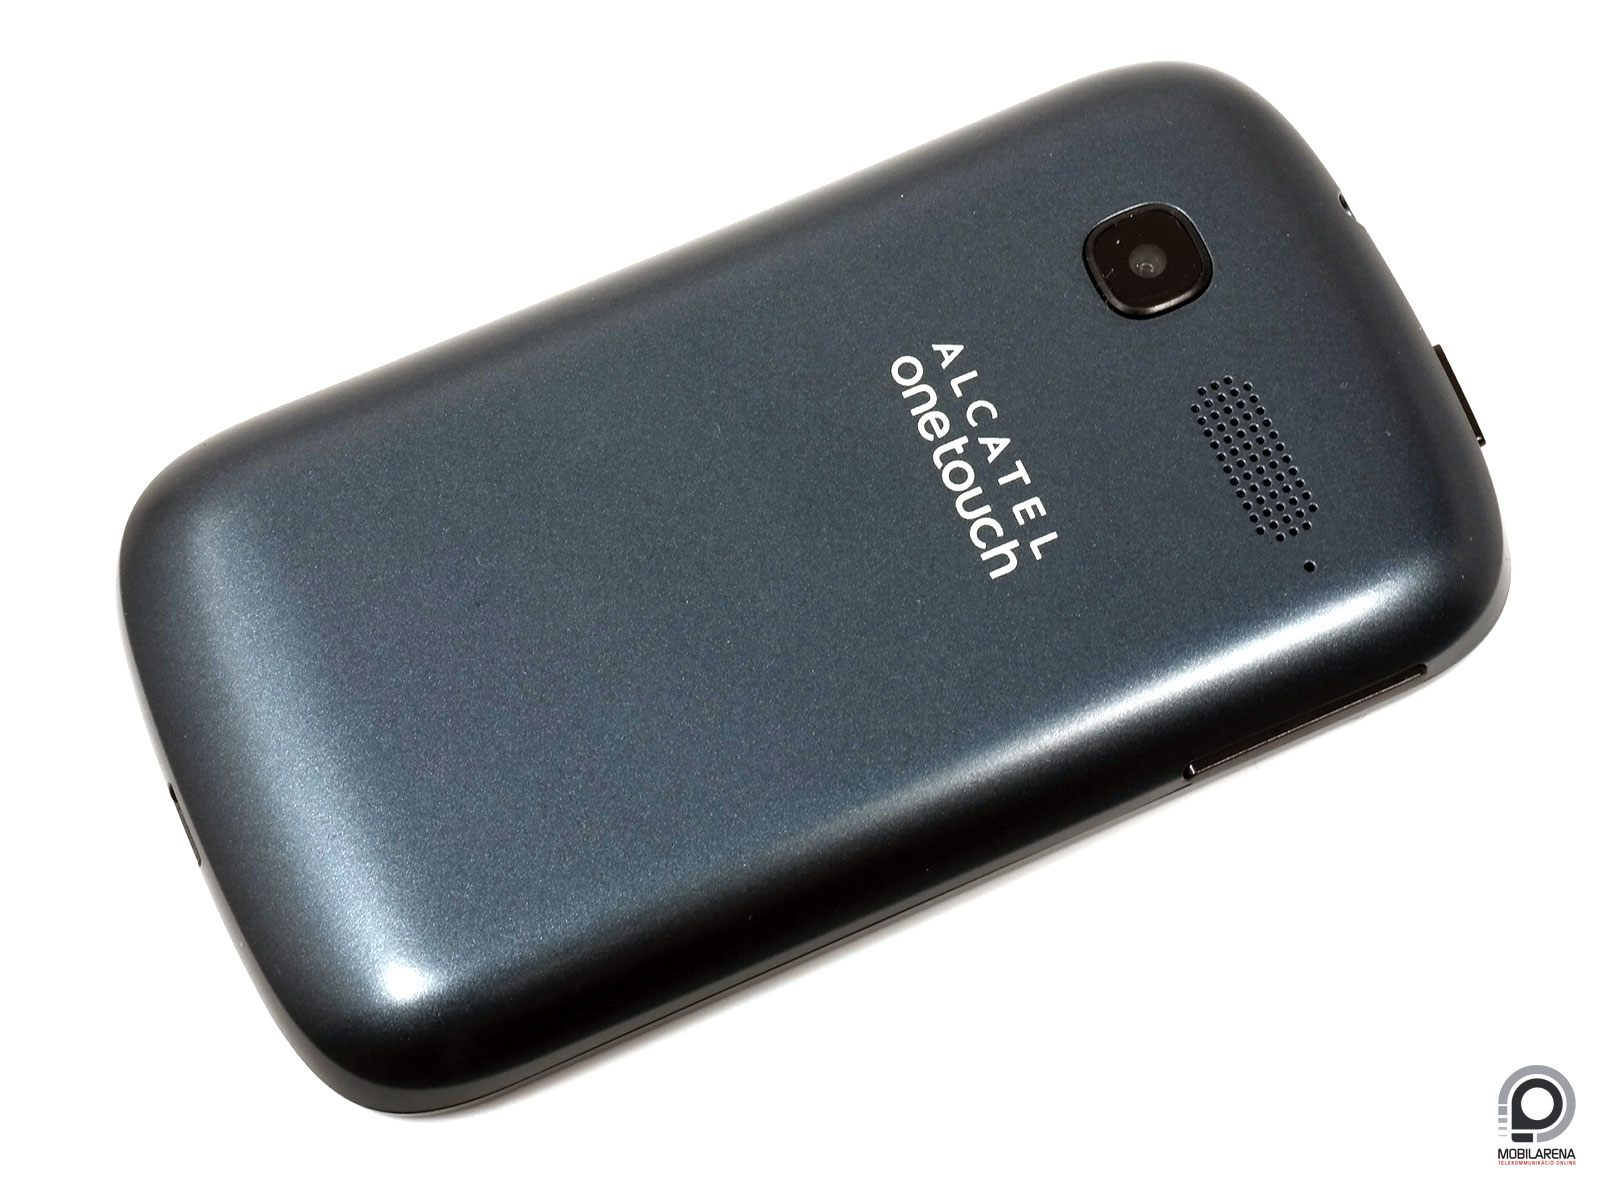 Alcatel One Touch Pop C1 - apró útitárs - Mobilarena Okostelefon teszt -  Nyomtatóbarát verzió